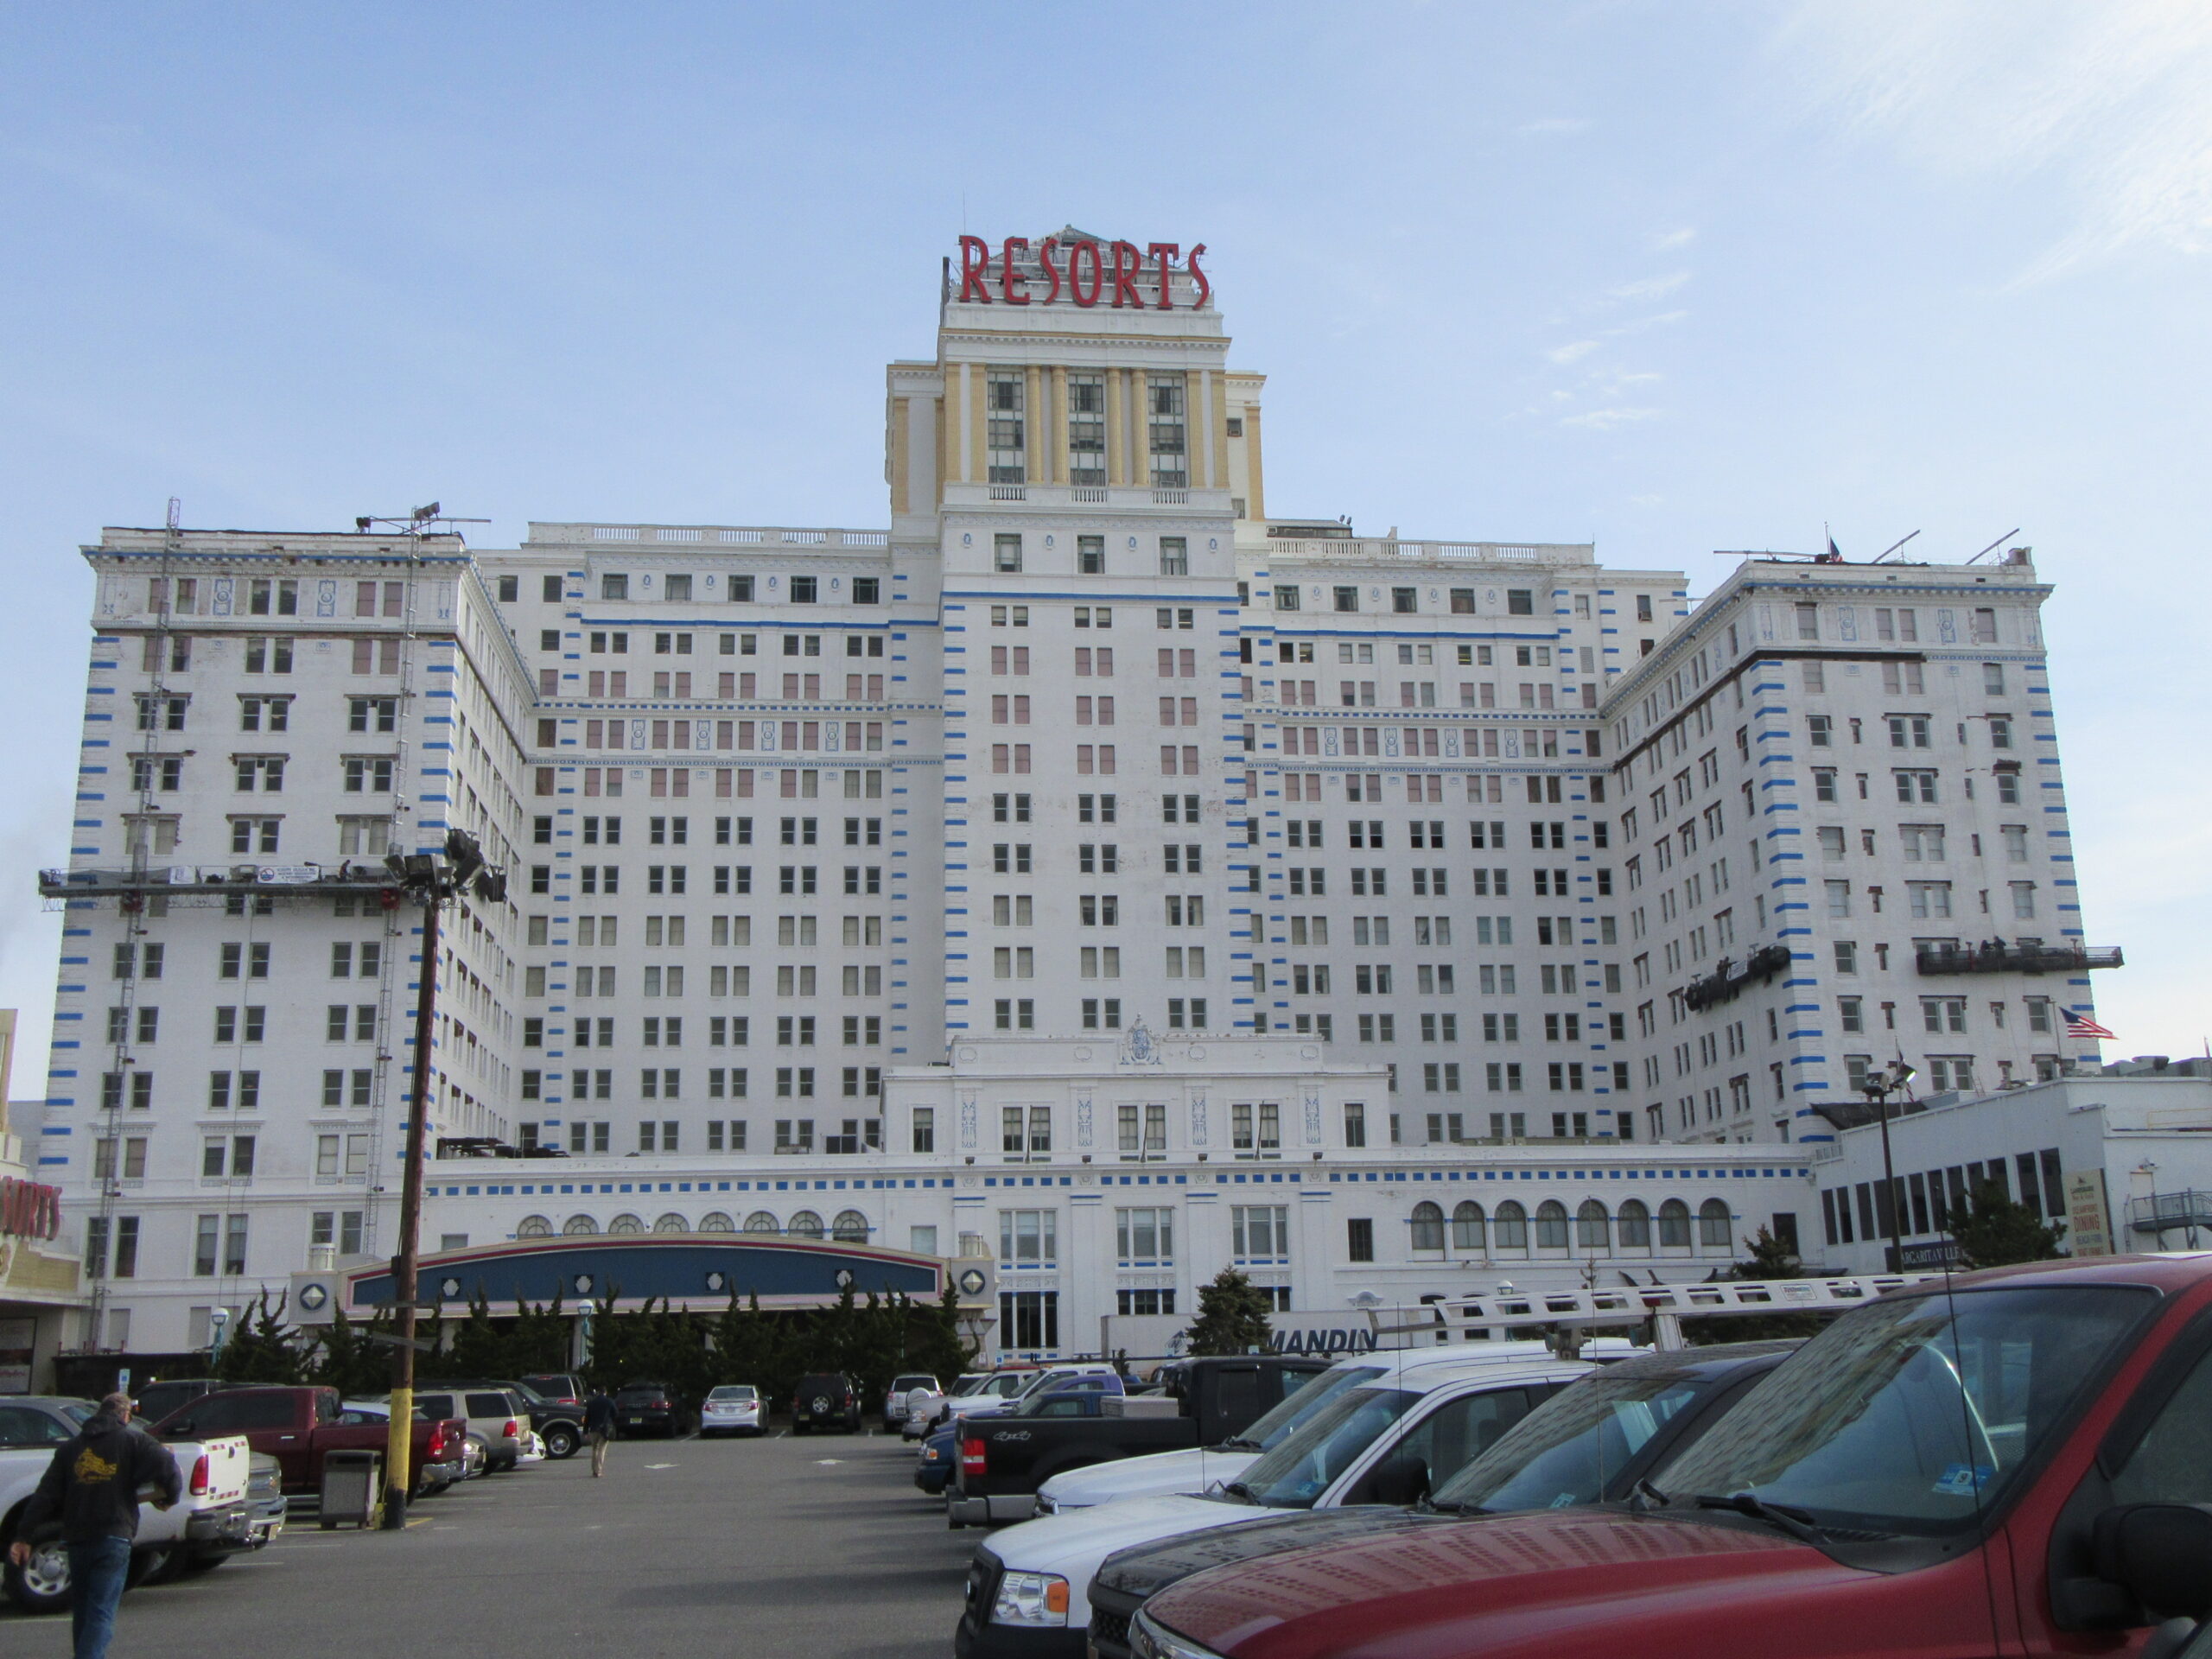 Resorts Hotel & Casino